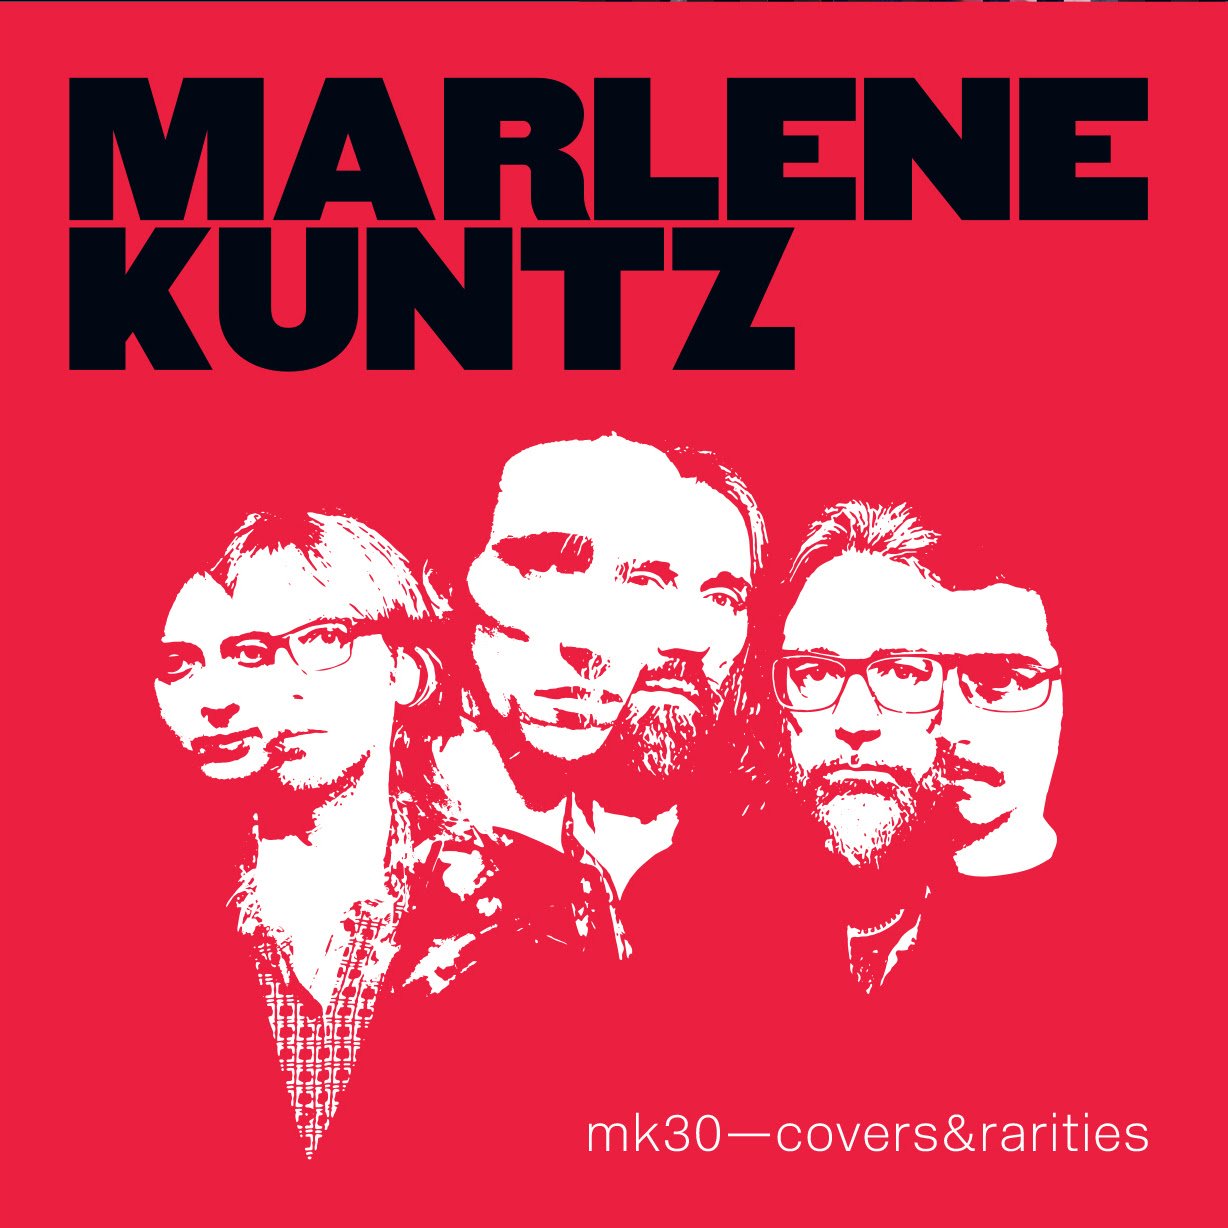 I Marlene Kuntz celebrano 30 anni di carriera con il progetto MK30